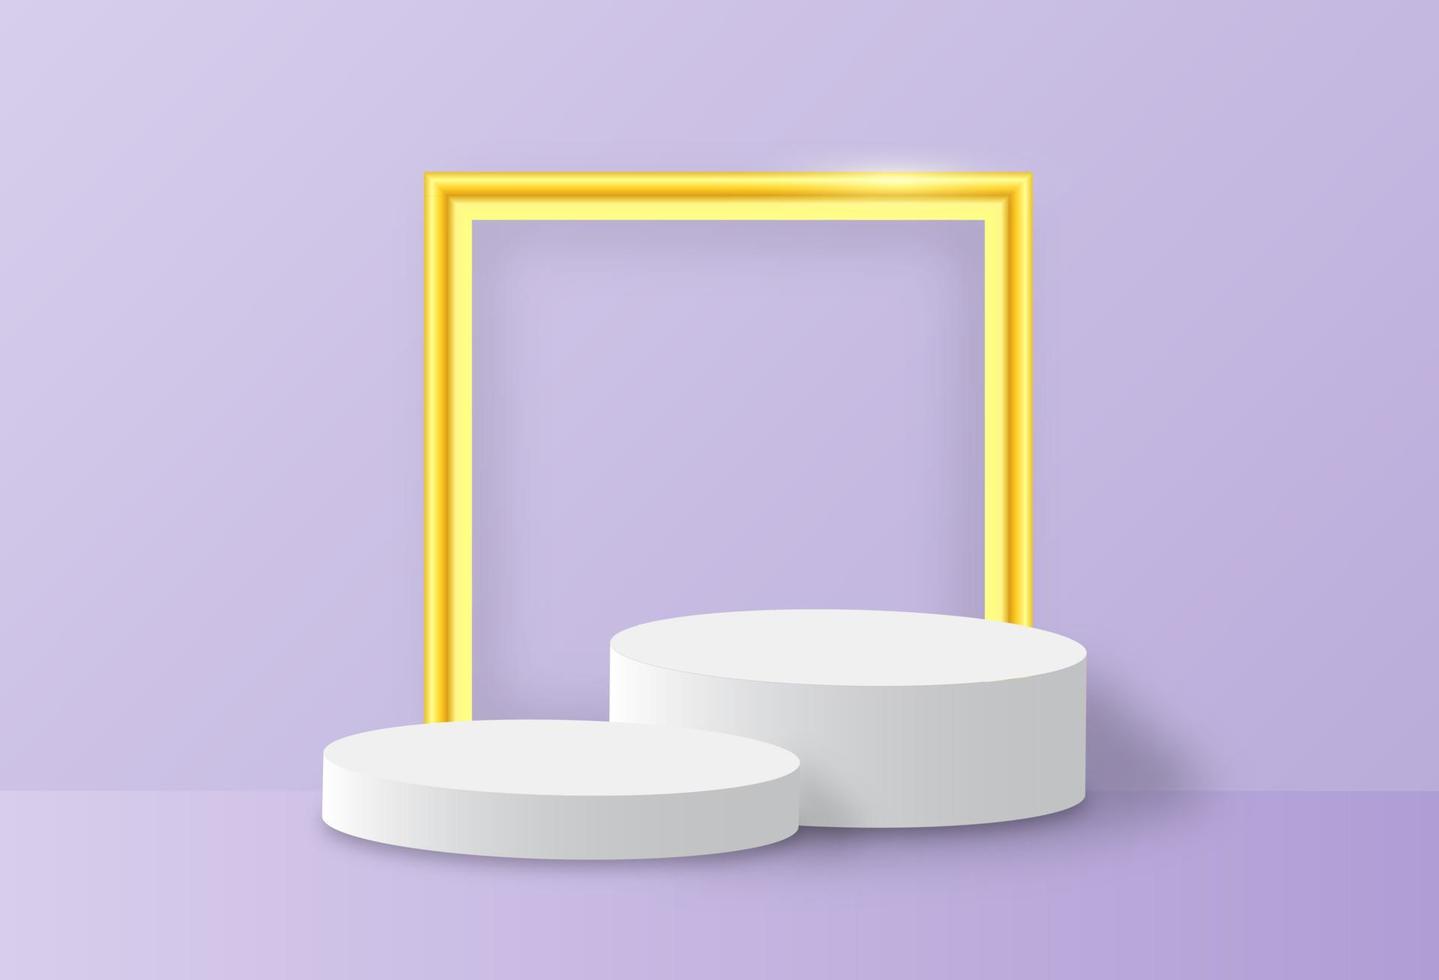 plataforma de podio geométrica con marco dorado. pedestal comercial de fondo violeta pastel. vector